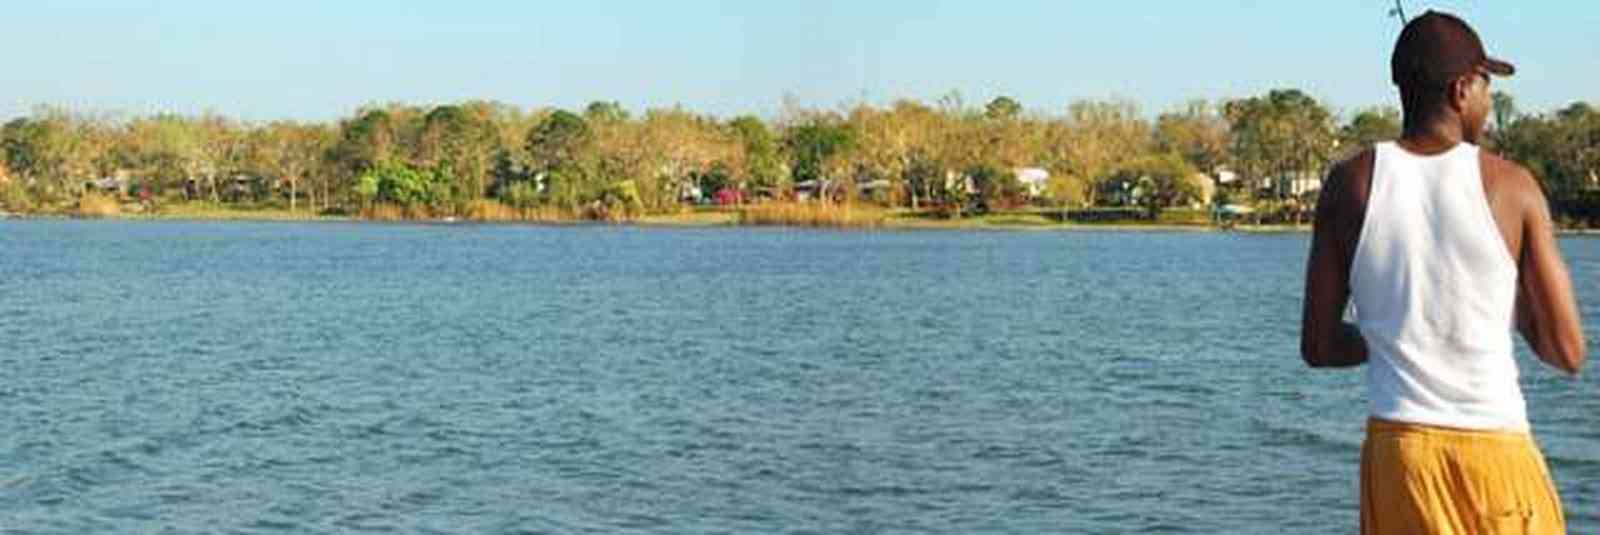 Pensacola:-Bayou-Texar_01.jpg:  bayou, texar, lake, bay, water, calm water, mansions, 